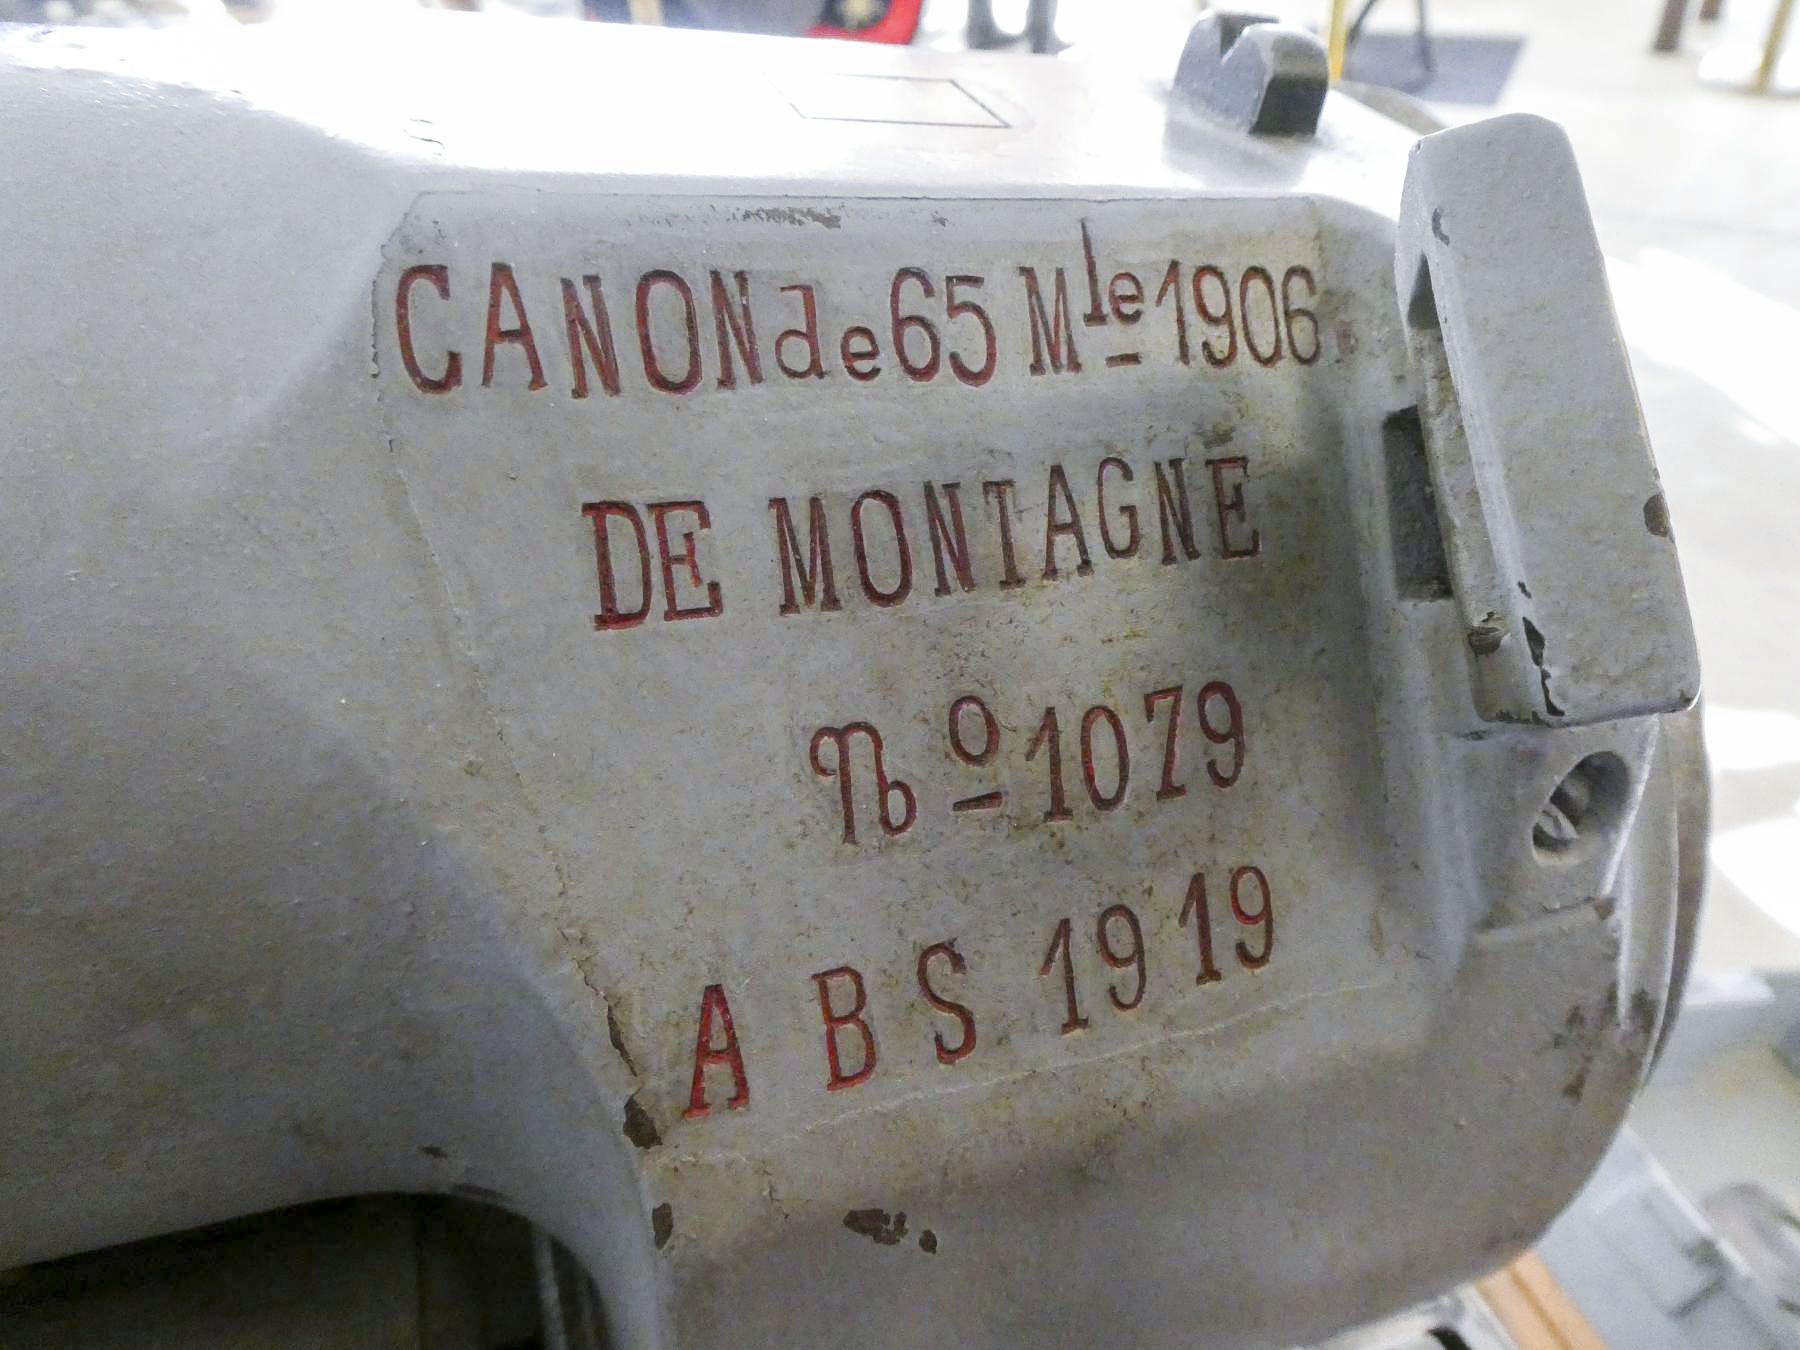 Ligne Maginot - Canon de 65 de montagne mle 1906 - Canon de 65 mm de montagne mle1906
Musée de l'artillerie de Draguignan